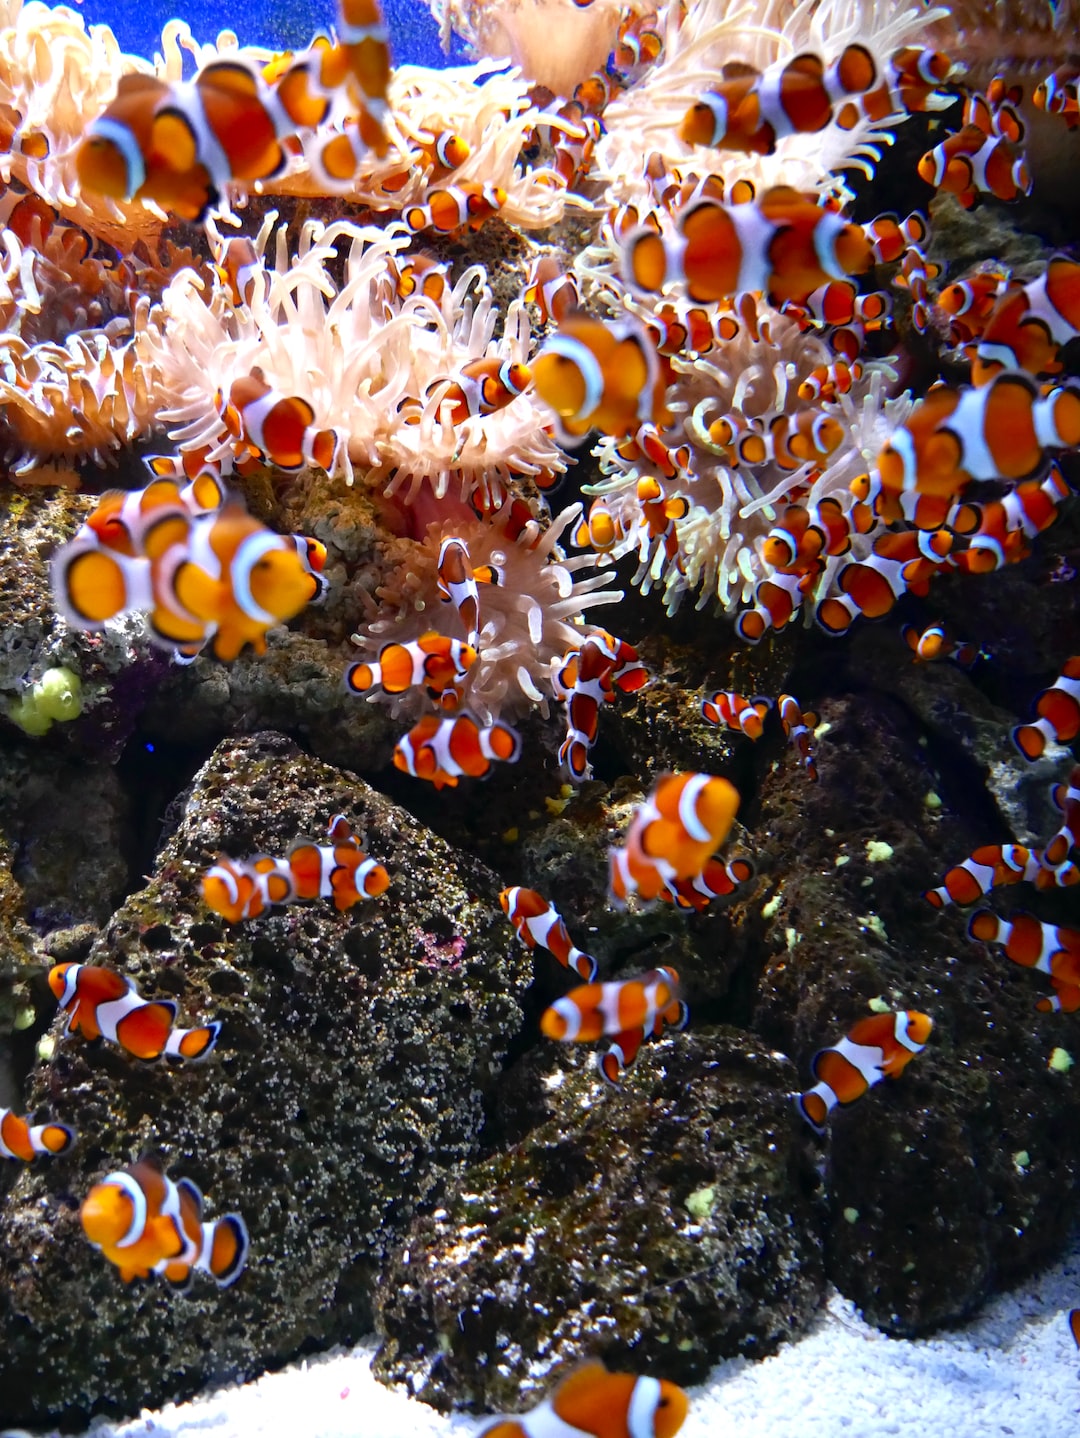 25 wichtige Fragen zu Aquarium Aussenfilter Mit Uvc Klärer